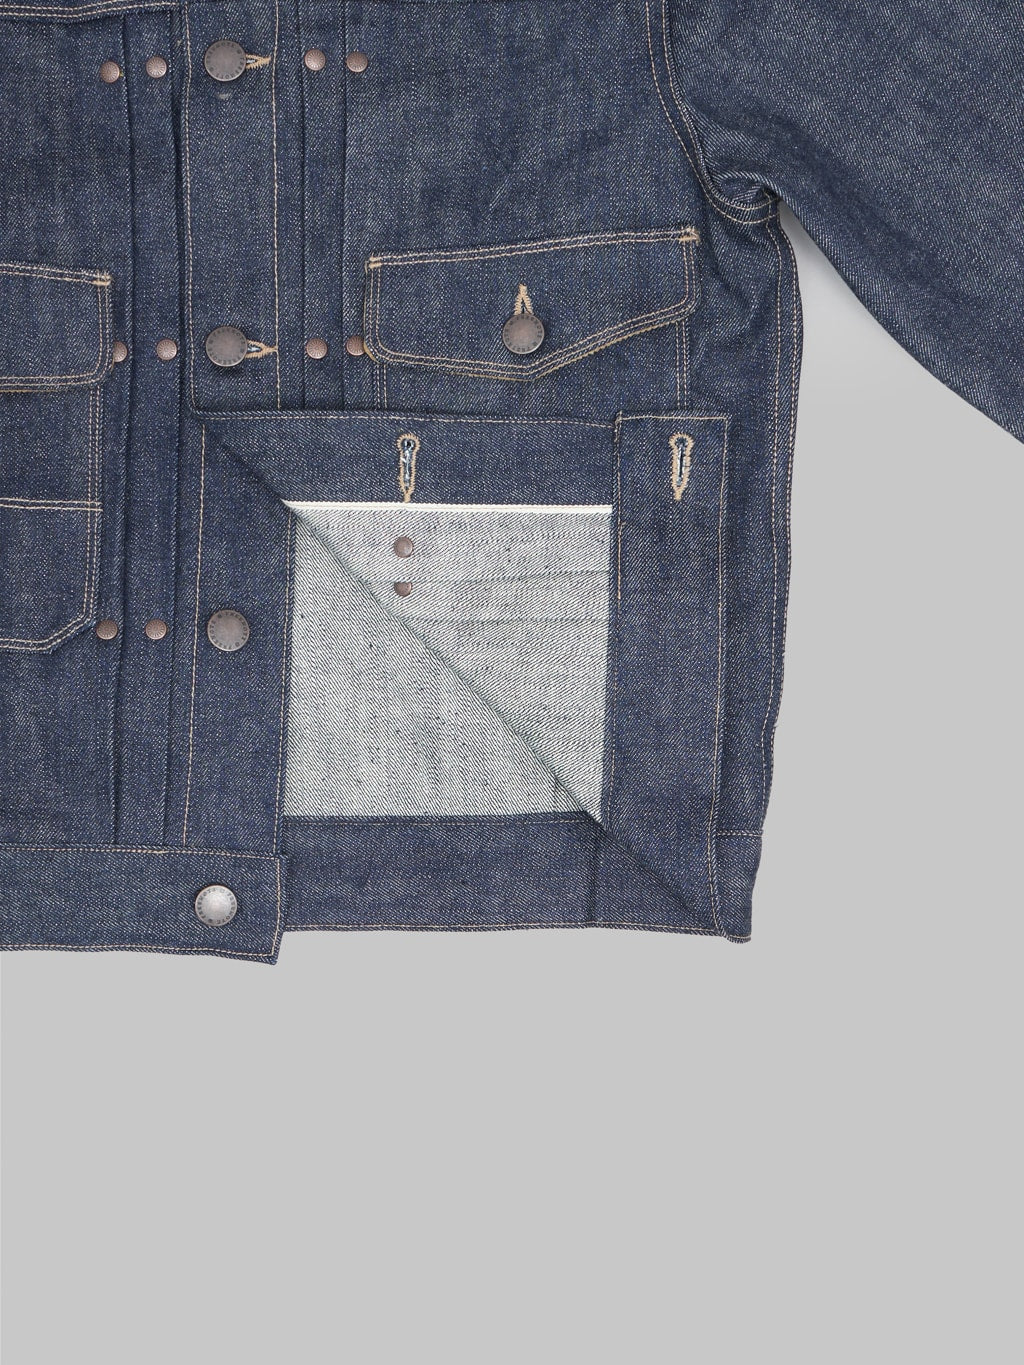 freenote cloth rj 313 ounce indigo selvedge denim jacket interior fabric